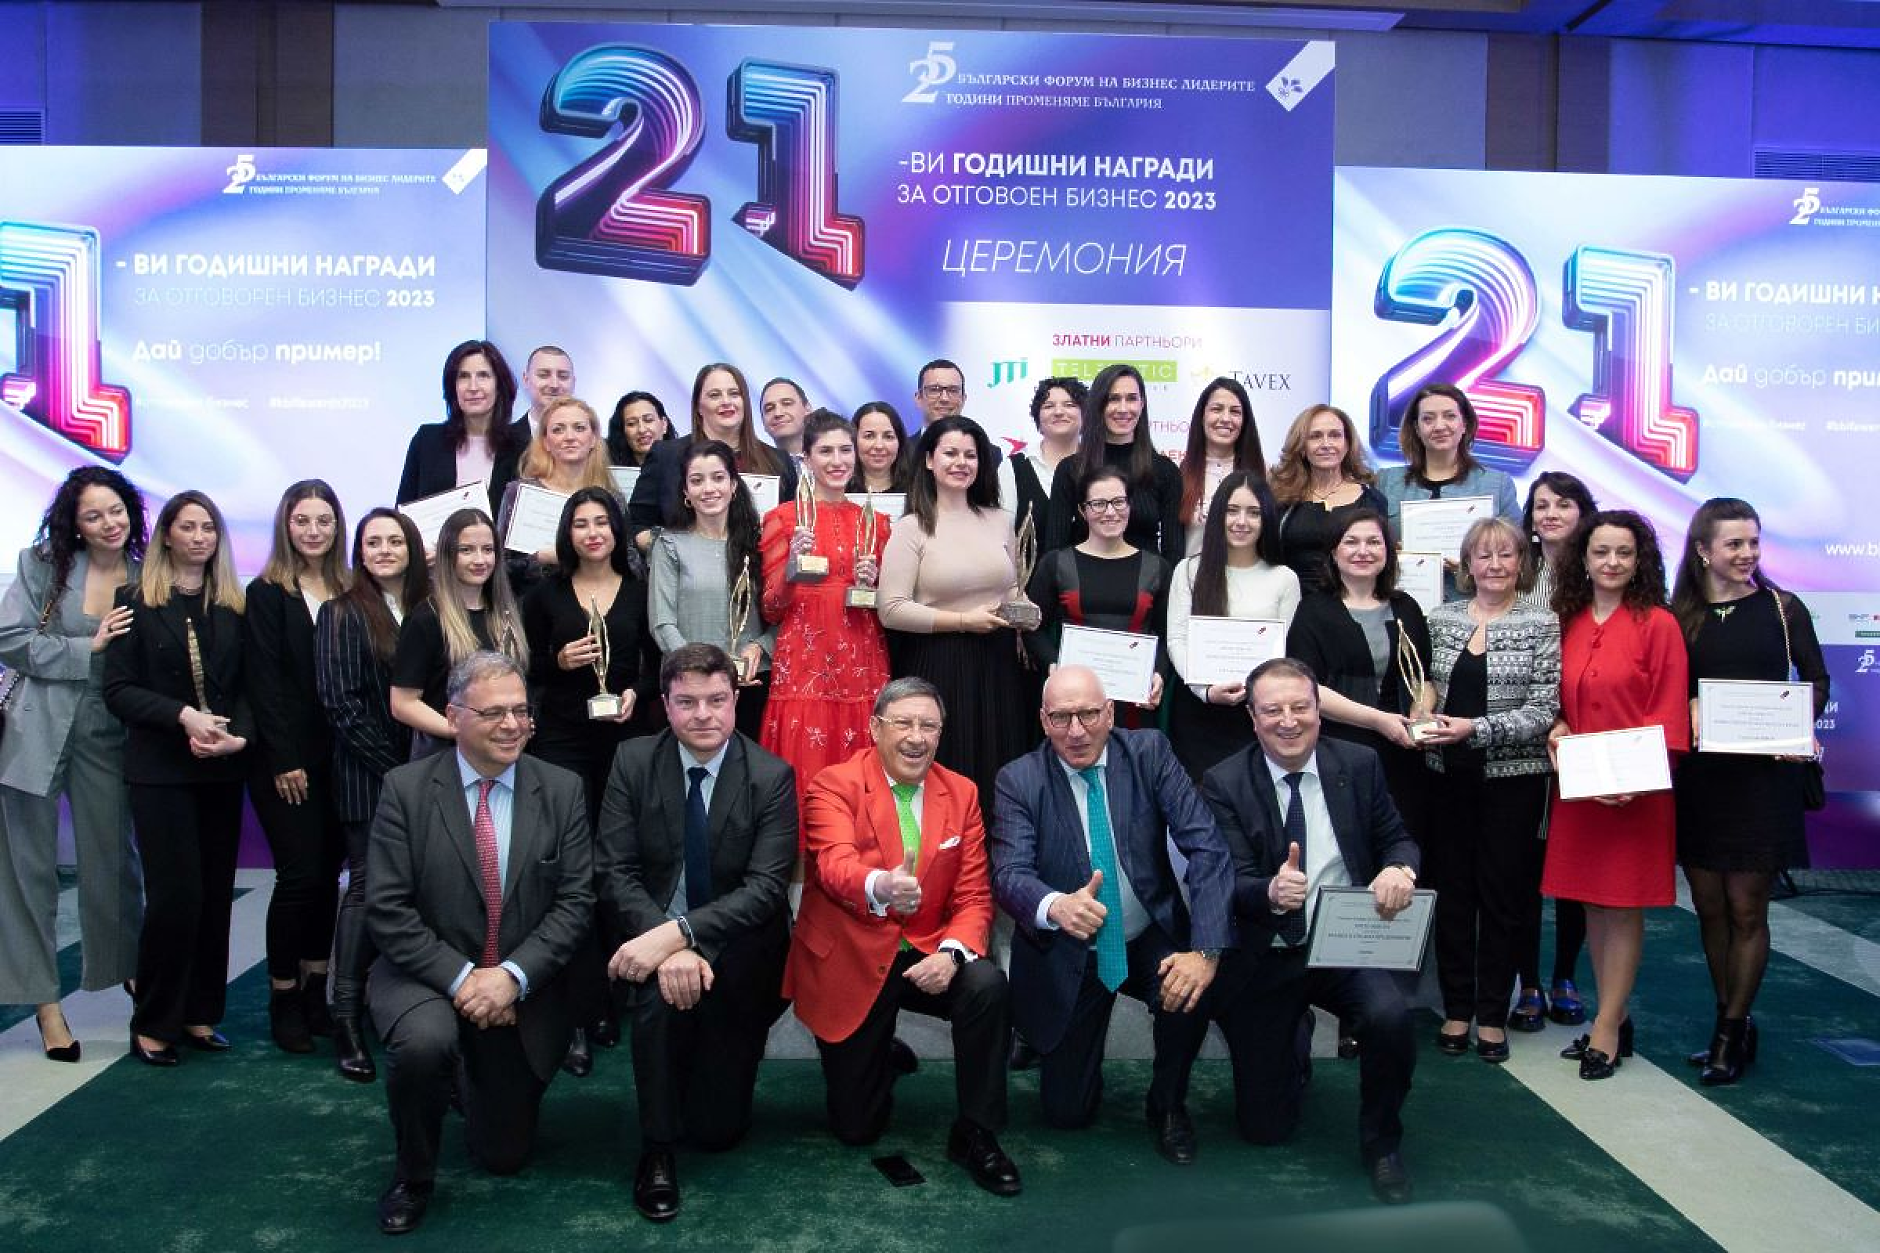 Обявиха победителите в 21-вите Годишни награди за отговорен бизнес